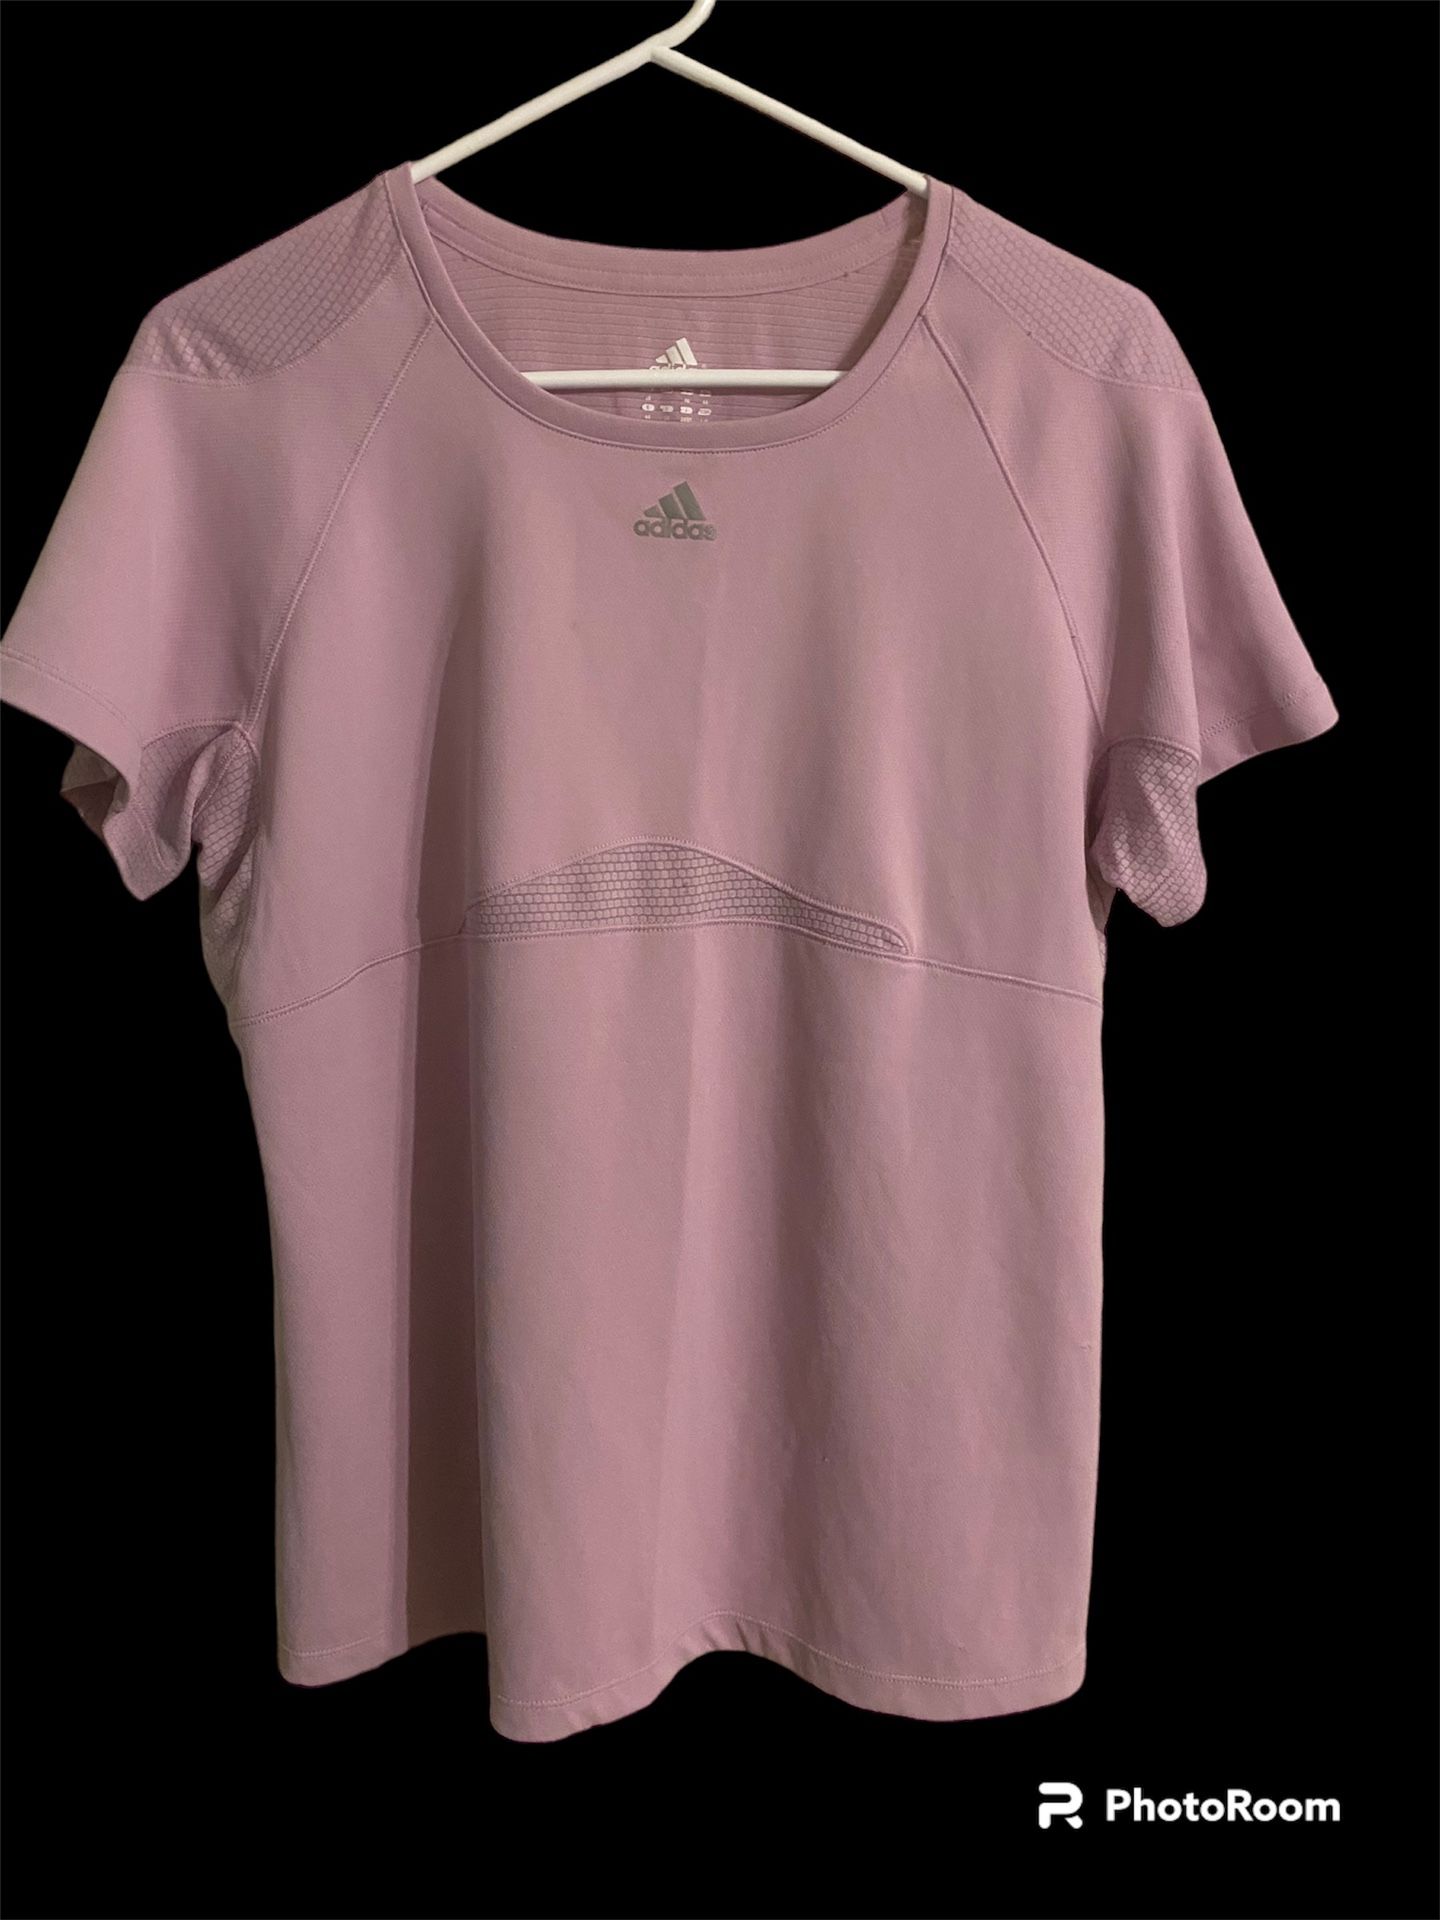  Adidas Women’s Athletic Shirt, Size Large